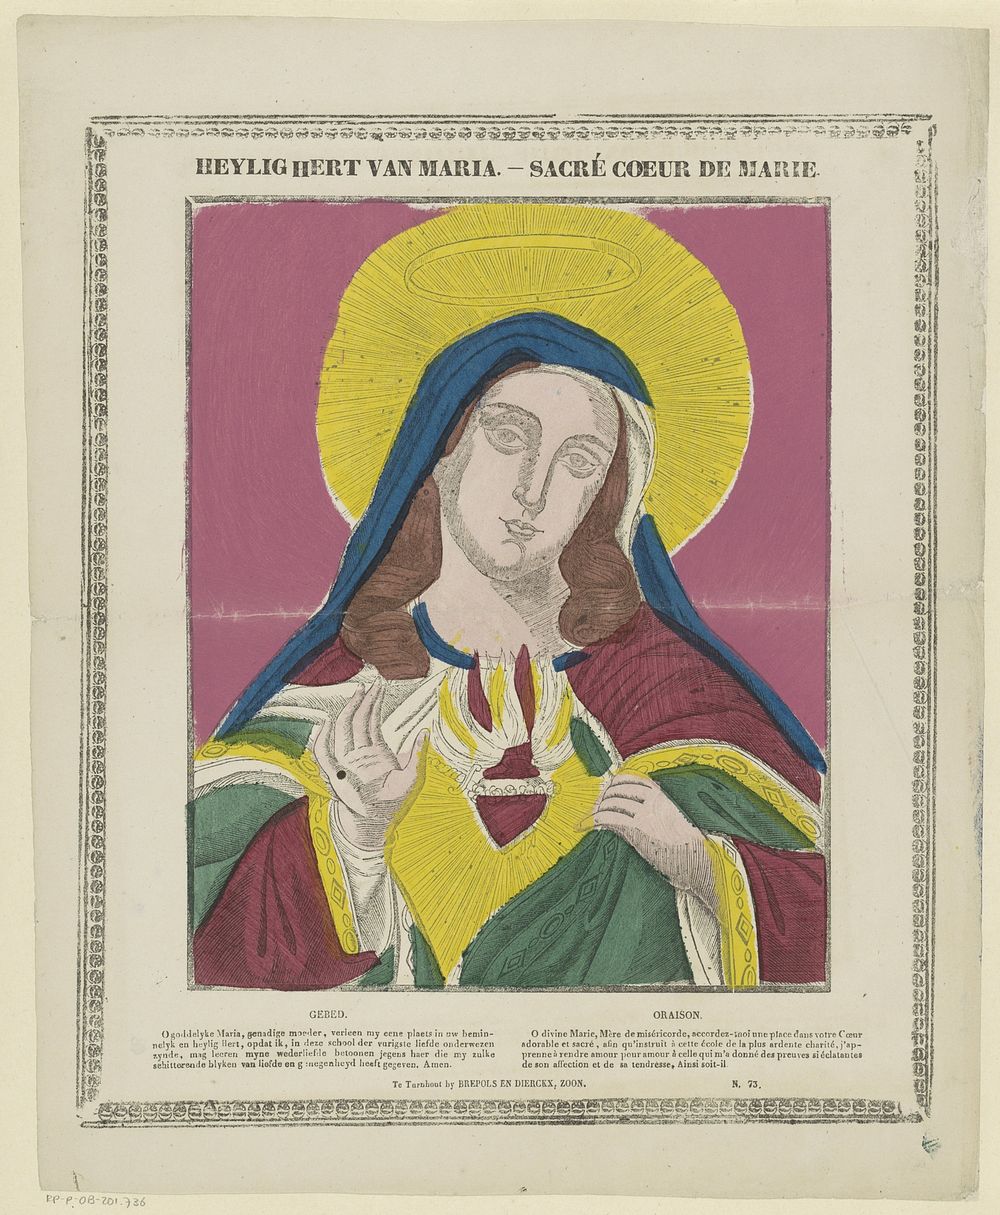 Heylig hert van Maria / Sacré coeur de Marie (1833 - 1911) by Brepols and Dierckx zoon and anonymous